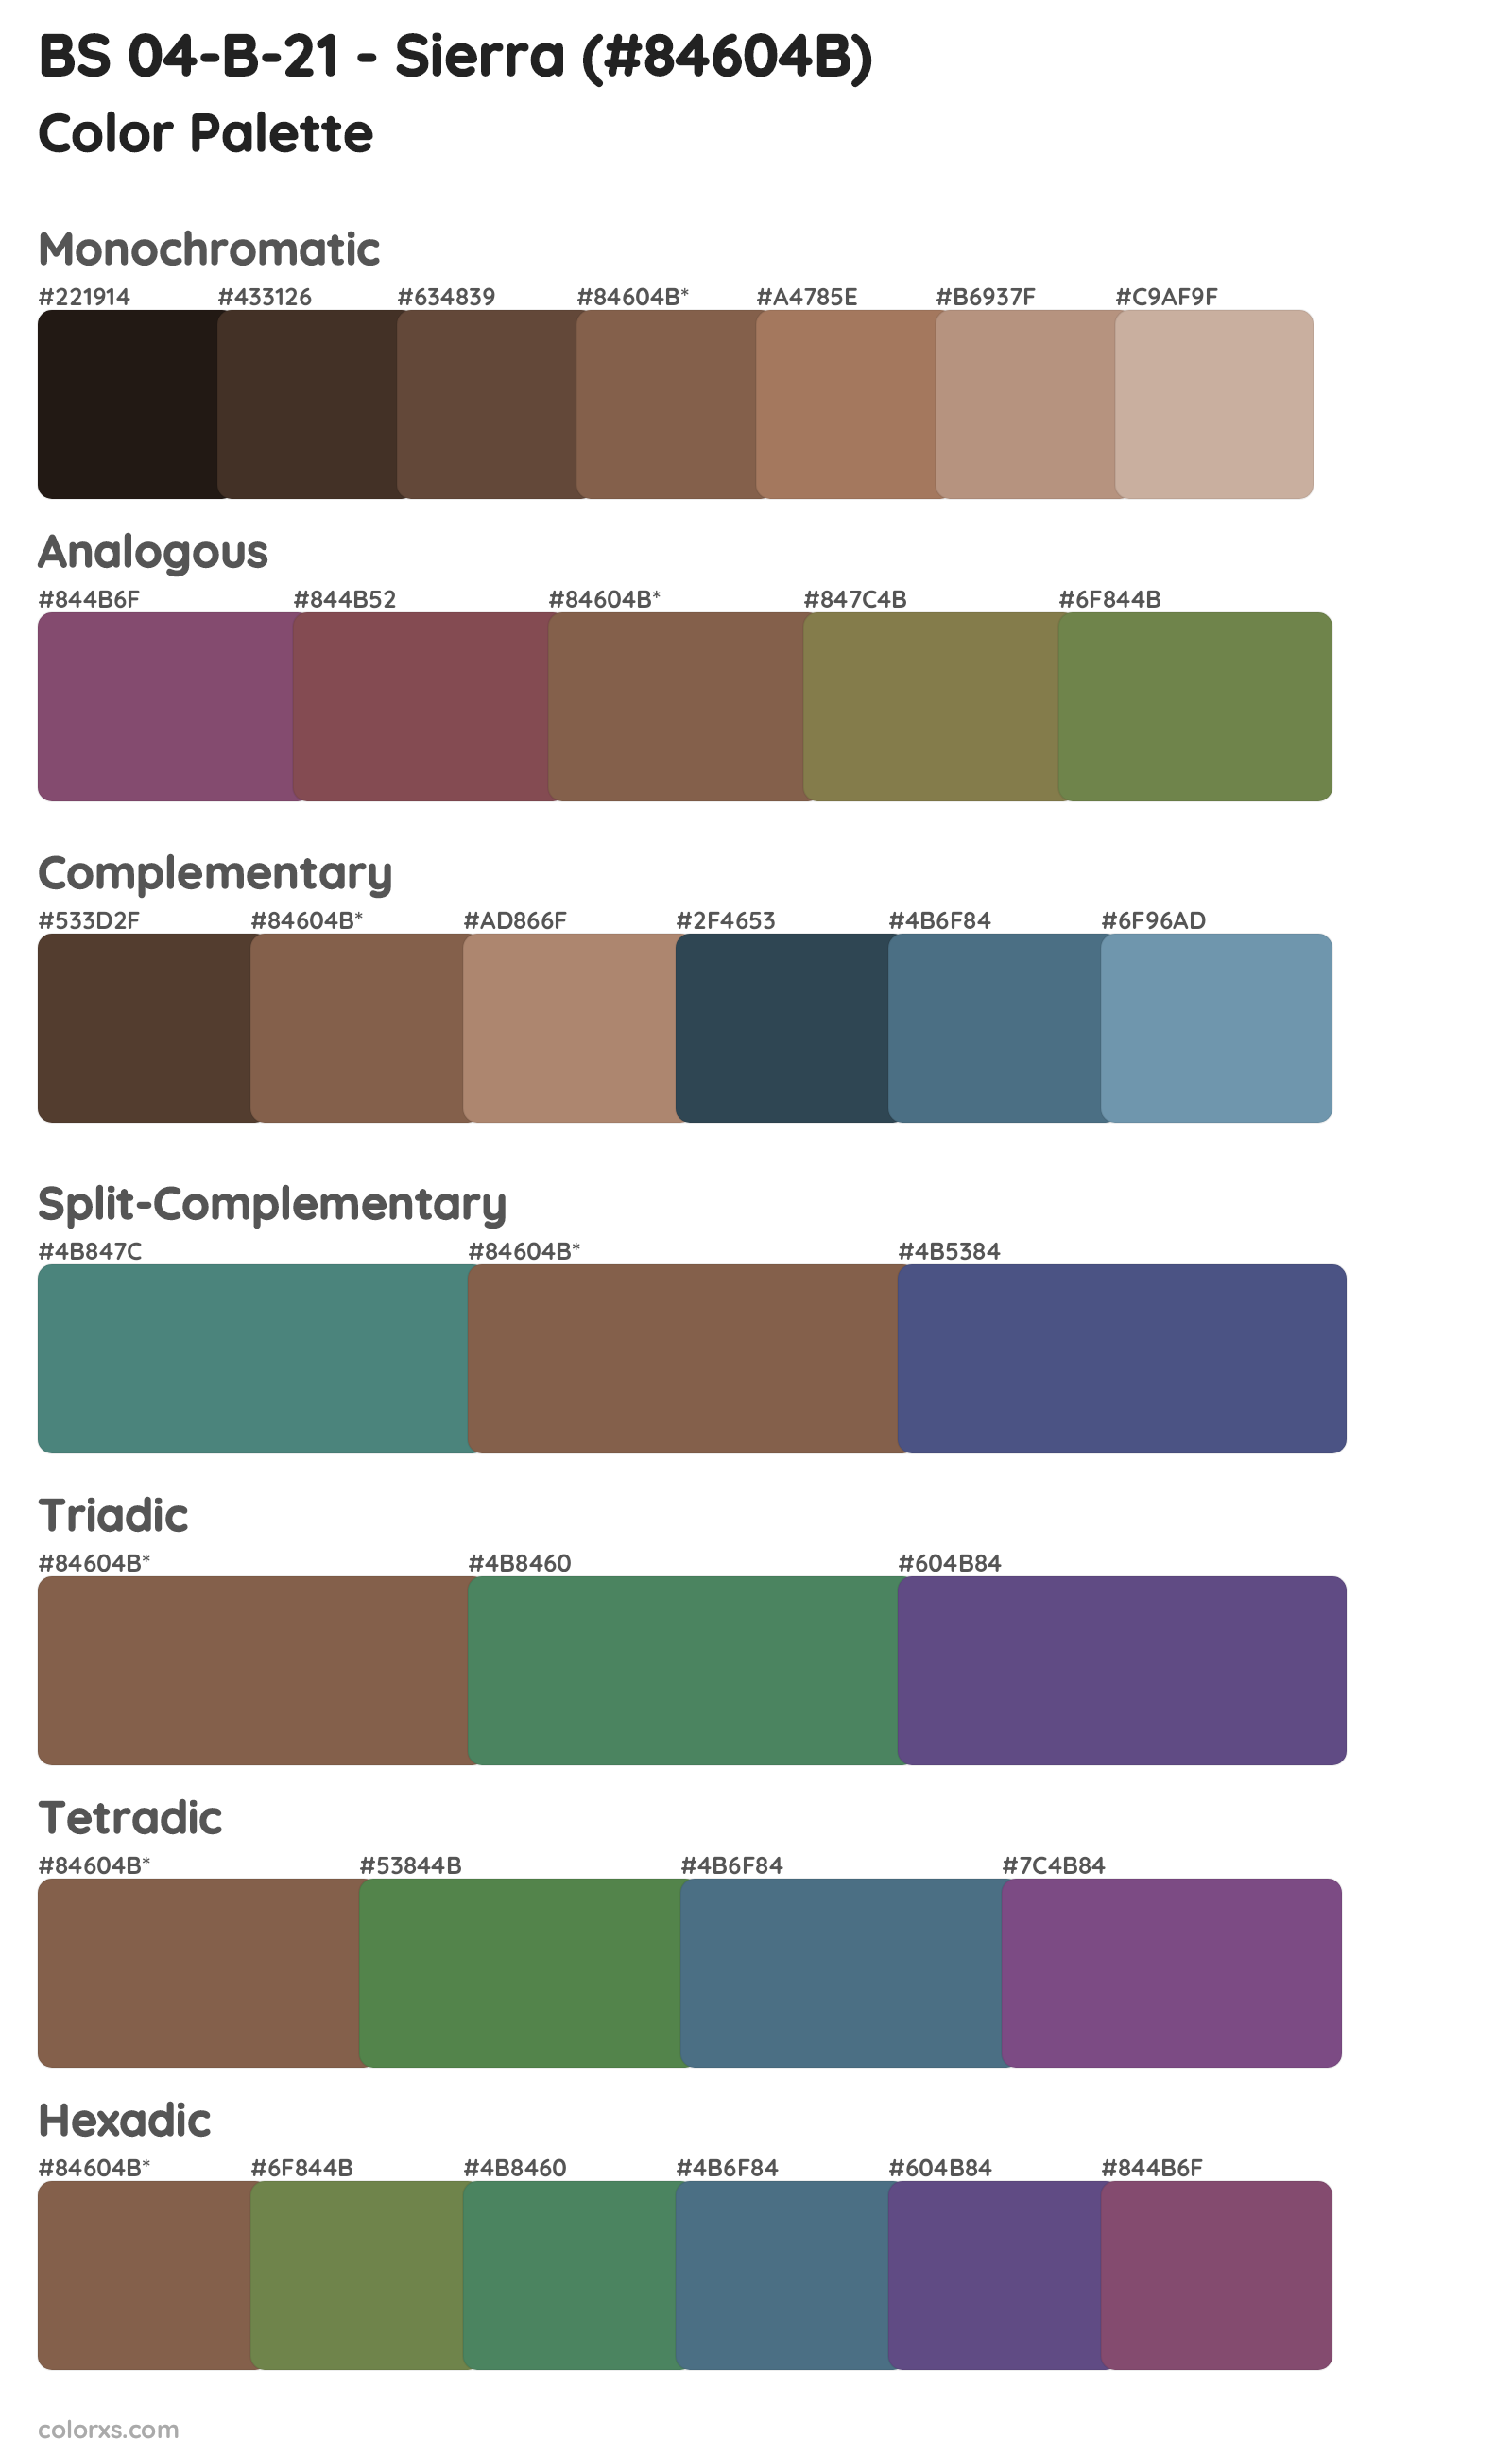 BS 04-B-21 - Sierra Color Scheme Palettes